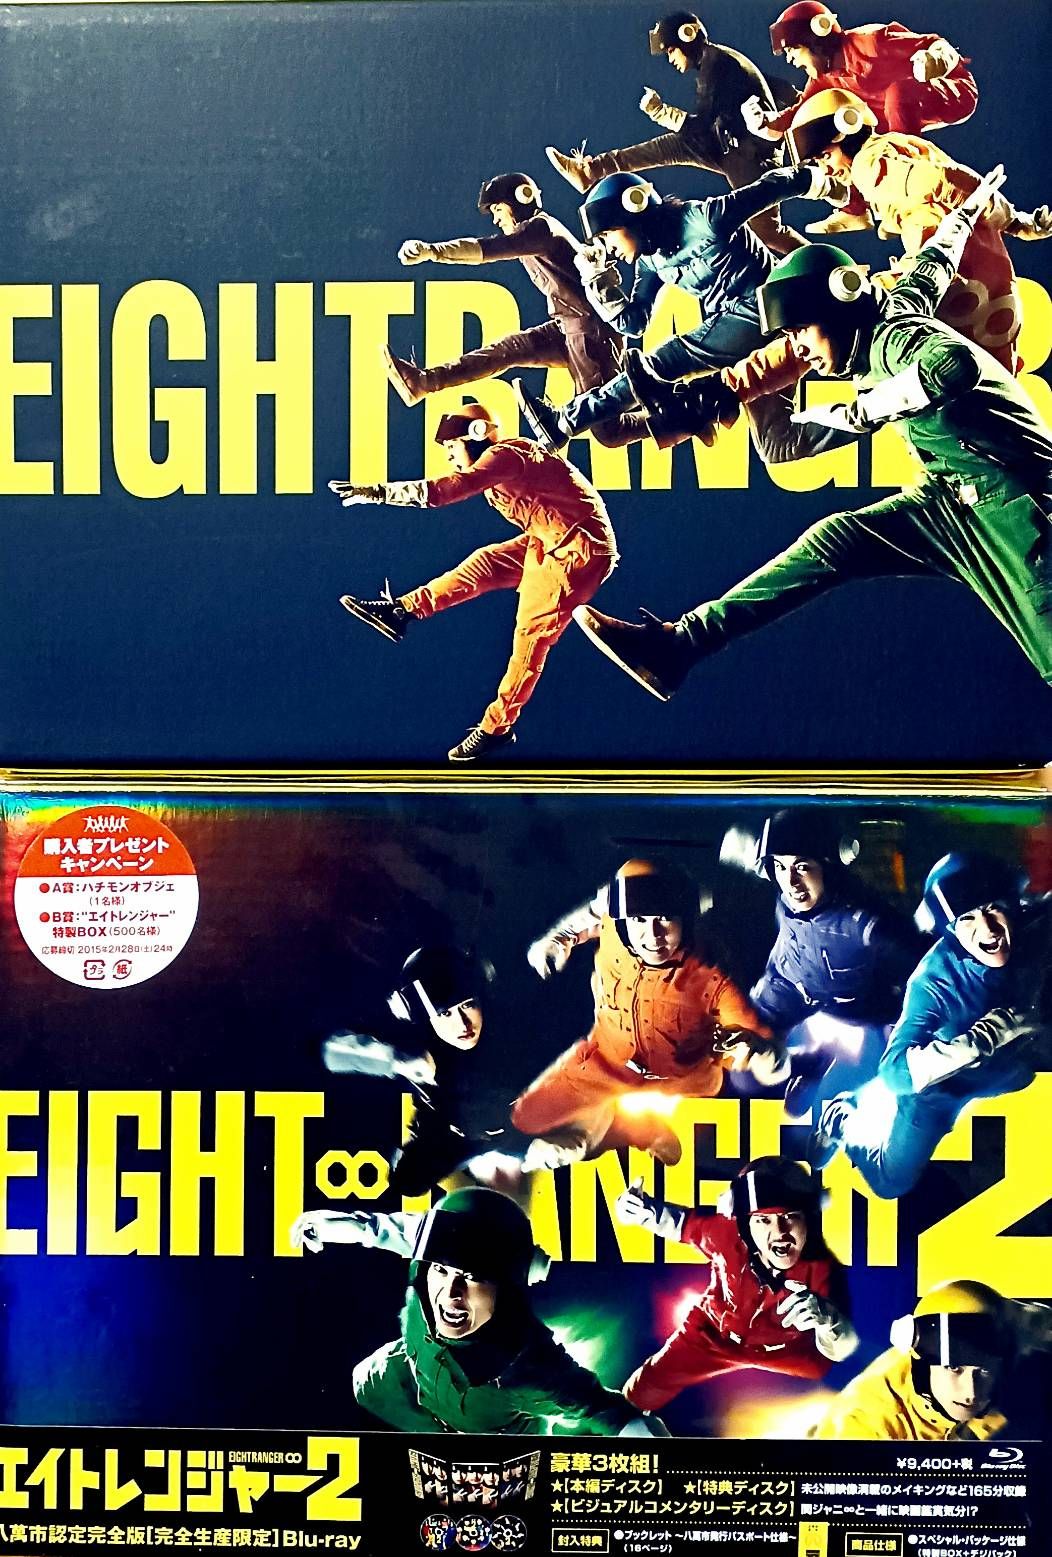 関ジャニ∞ エイトレンジャー EIGHTRANGER 映画 DVD - 邦画・日本映画